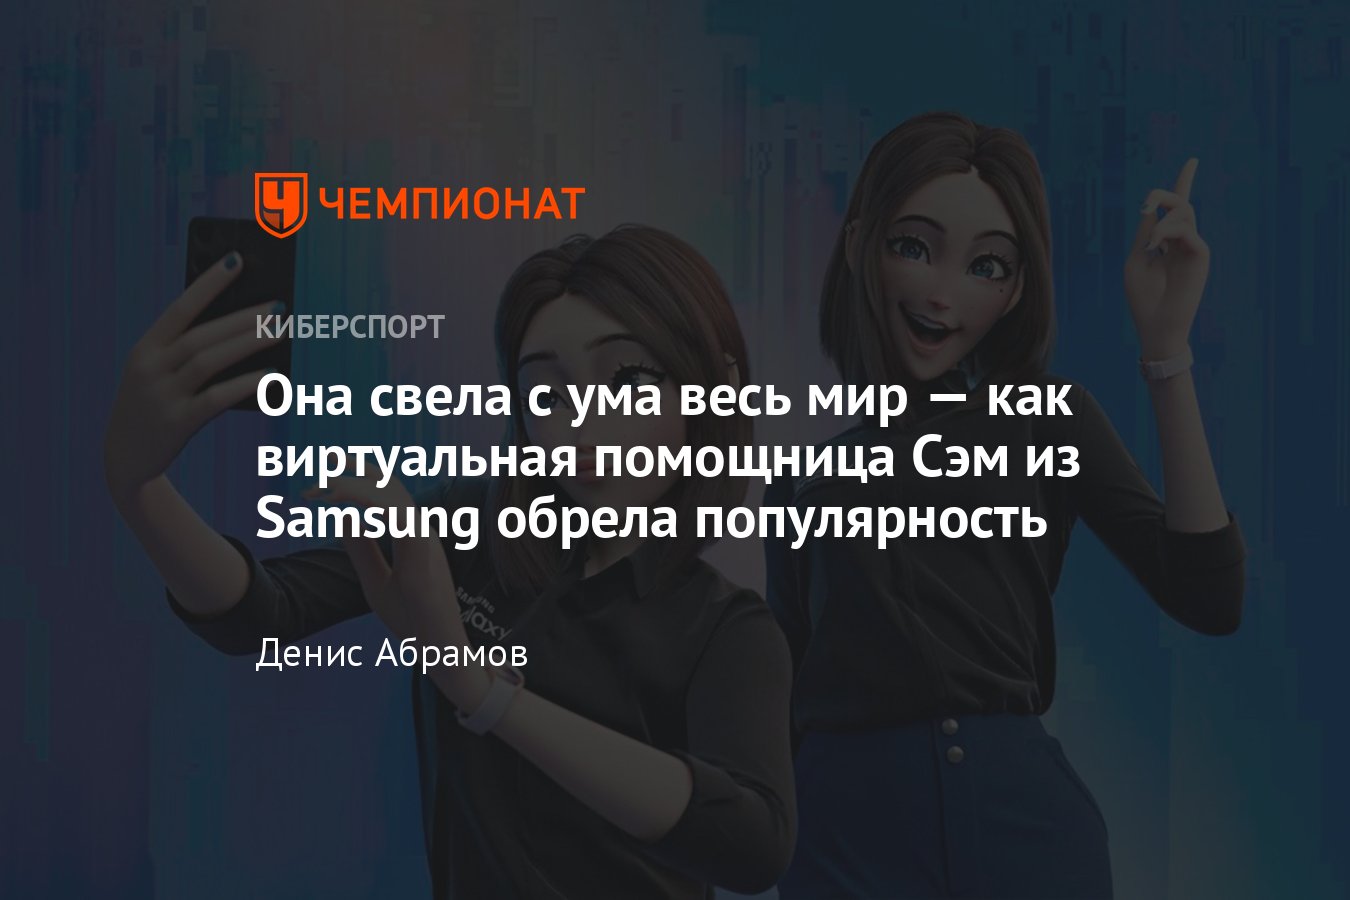 Ассистентка Samsung Sam выполнит любой твой запрос